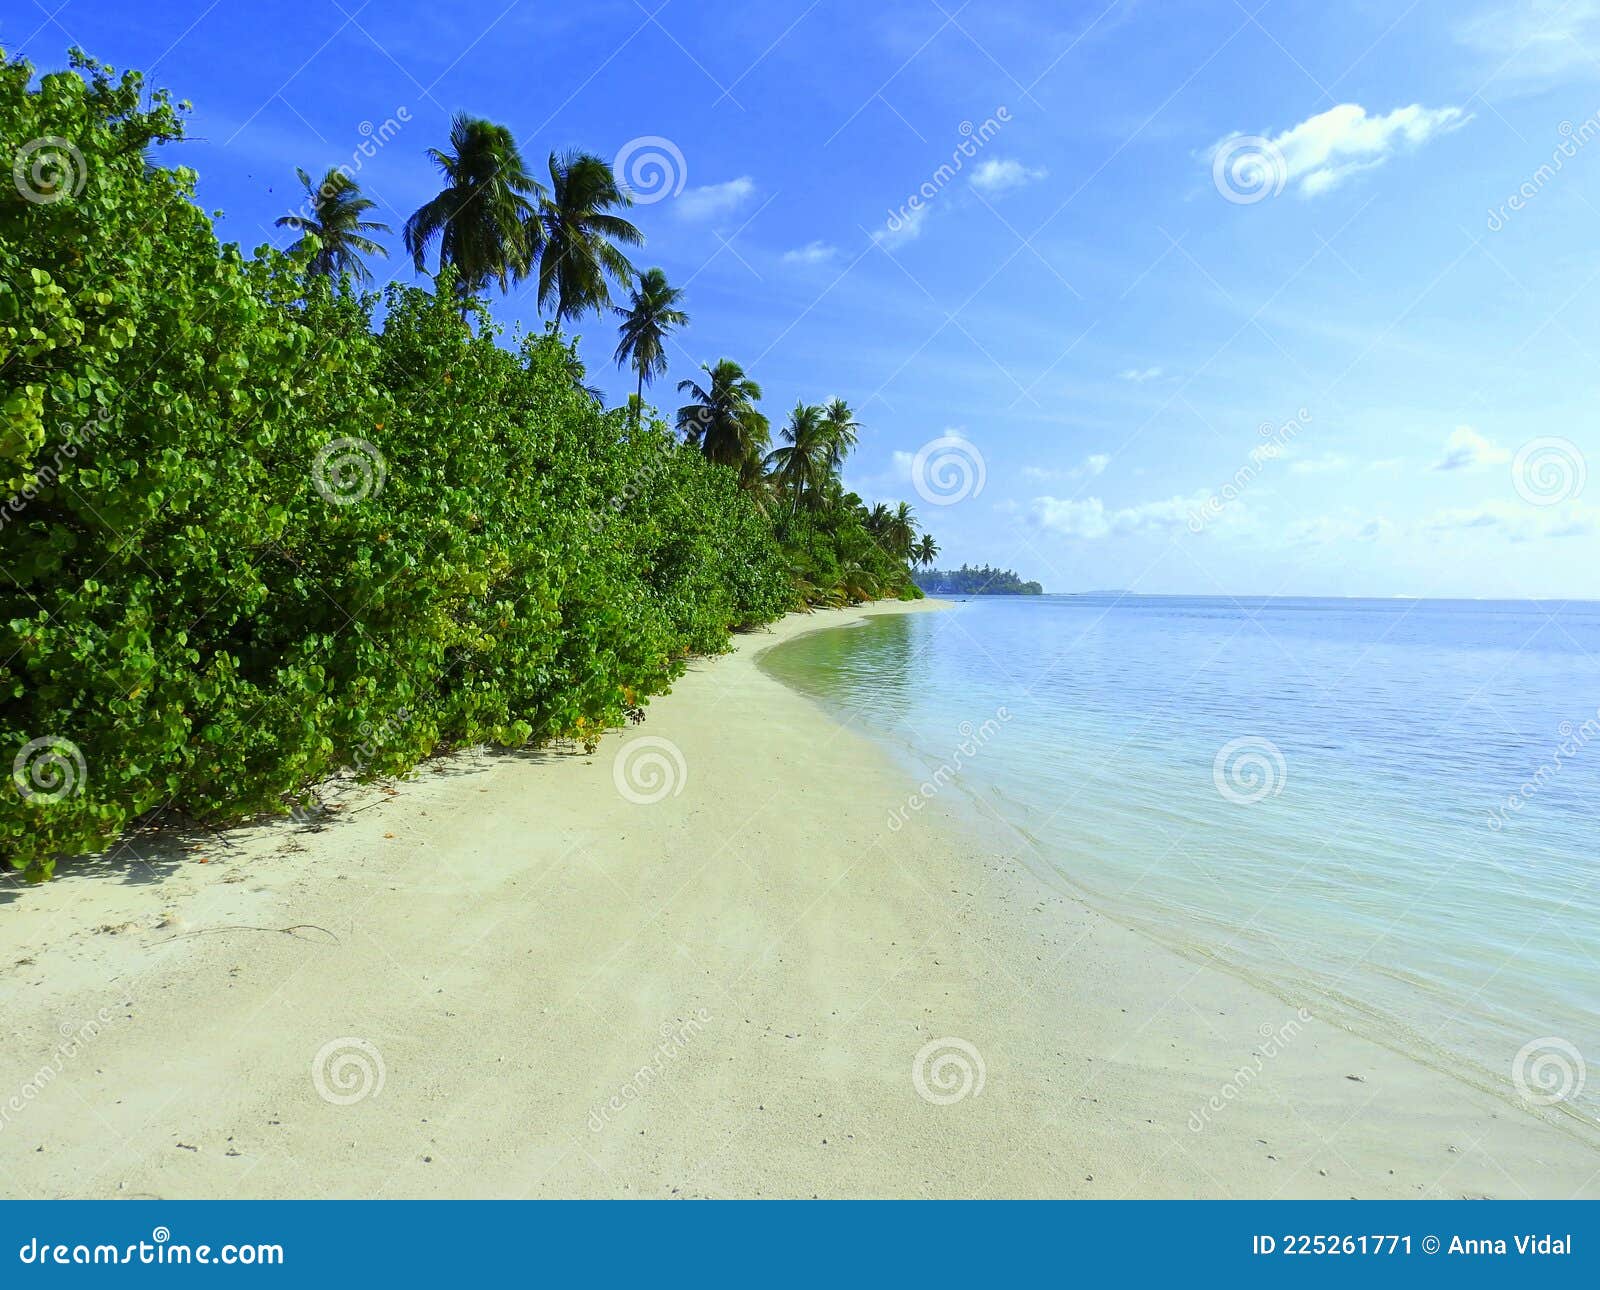 panorÃÂ¡mica playa tropical maldivas.